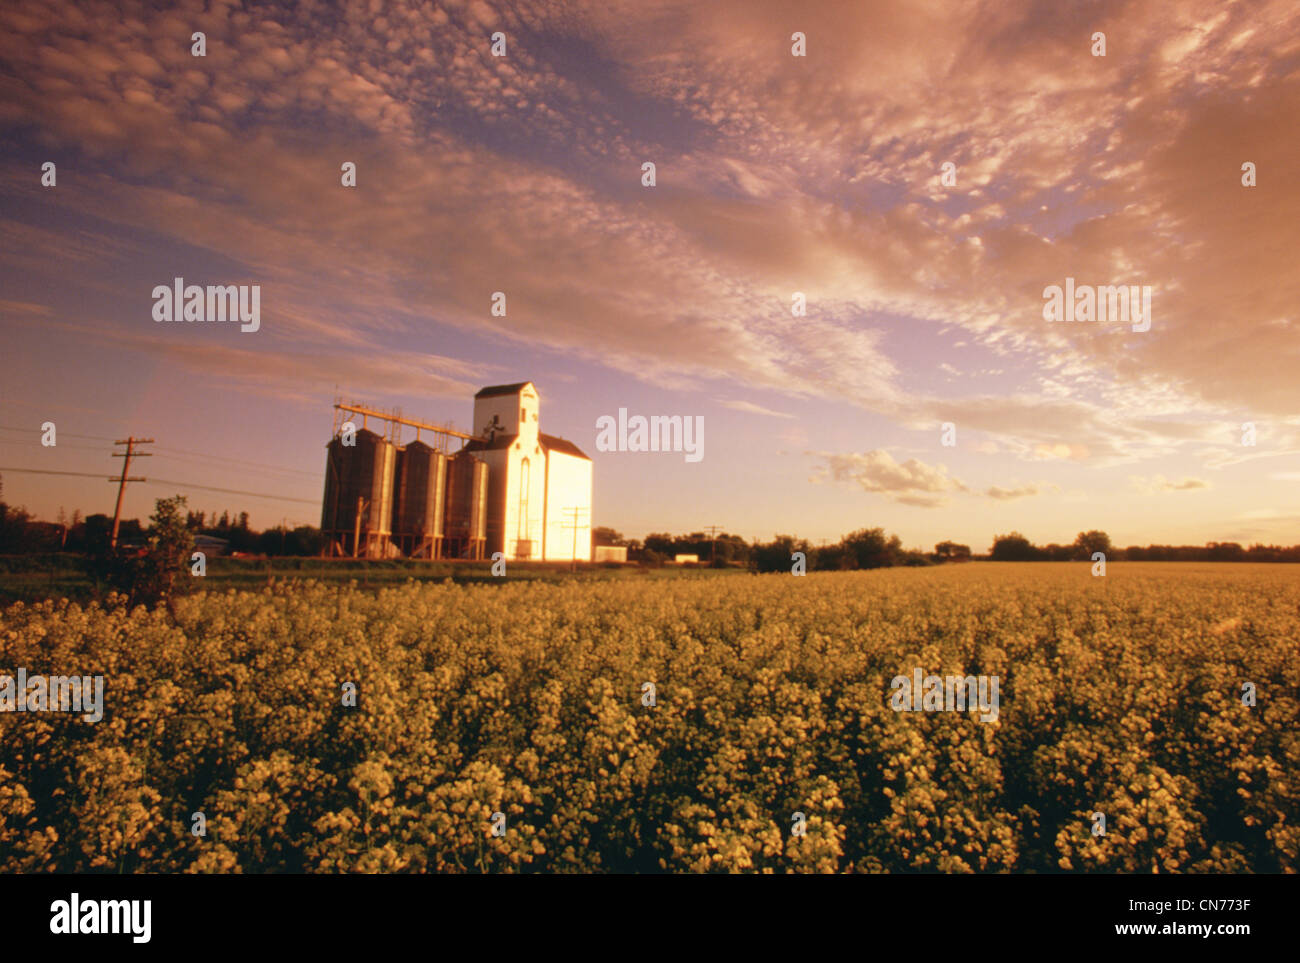 Grain Elevator in Canola Field, Dugald, Manitoba Stock Photo